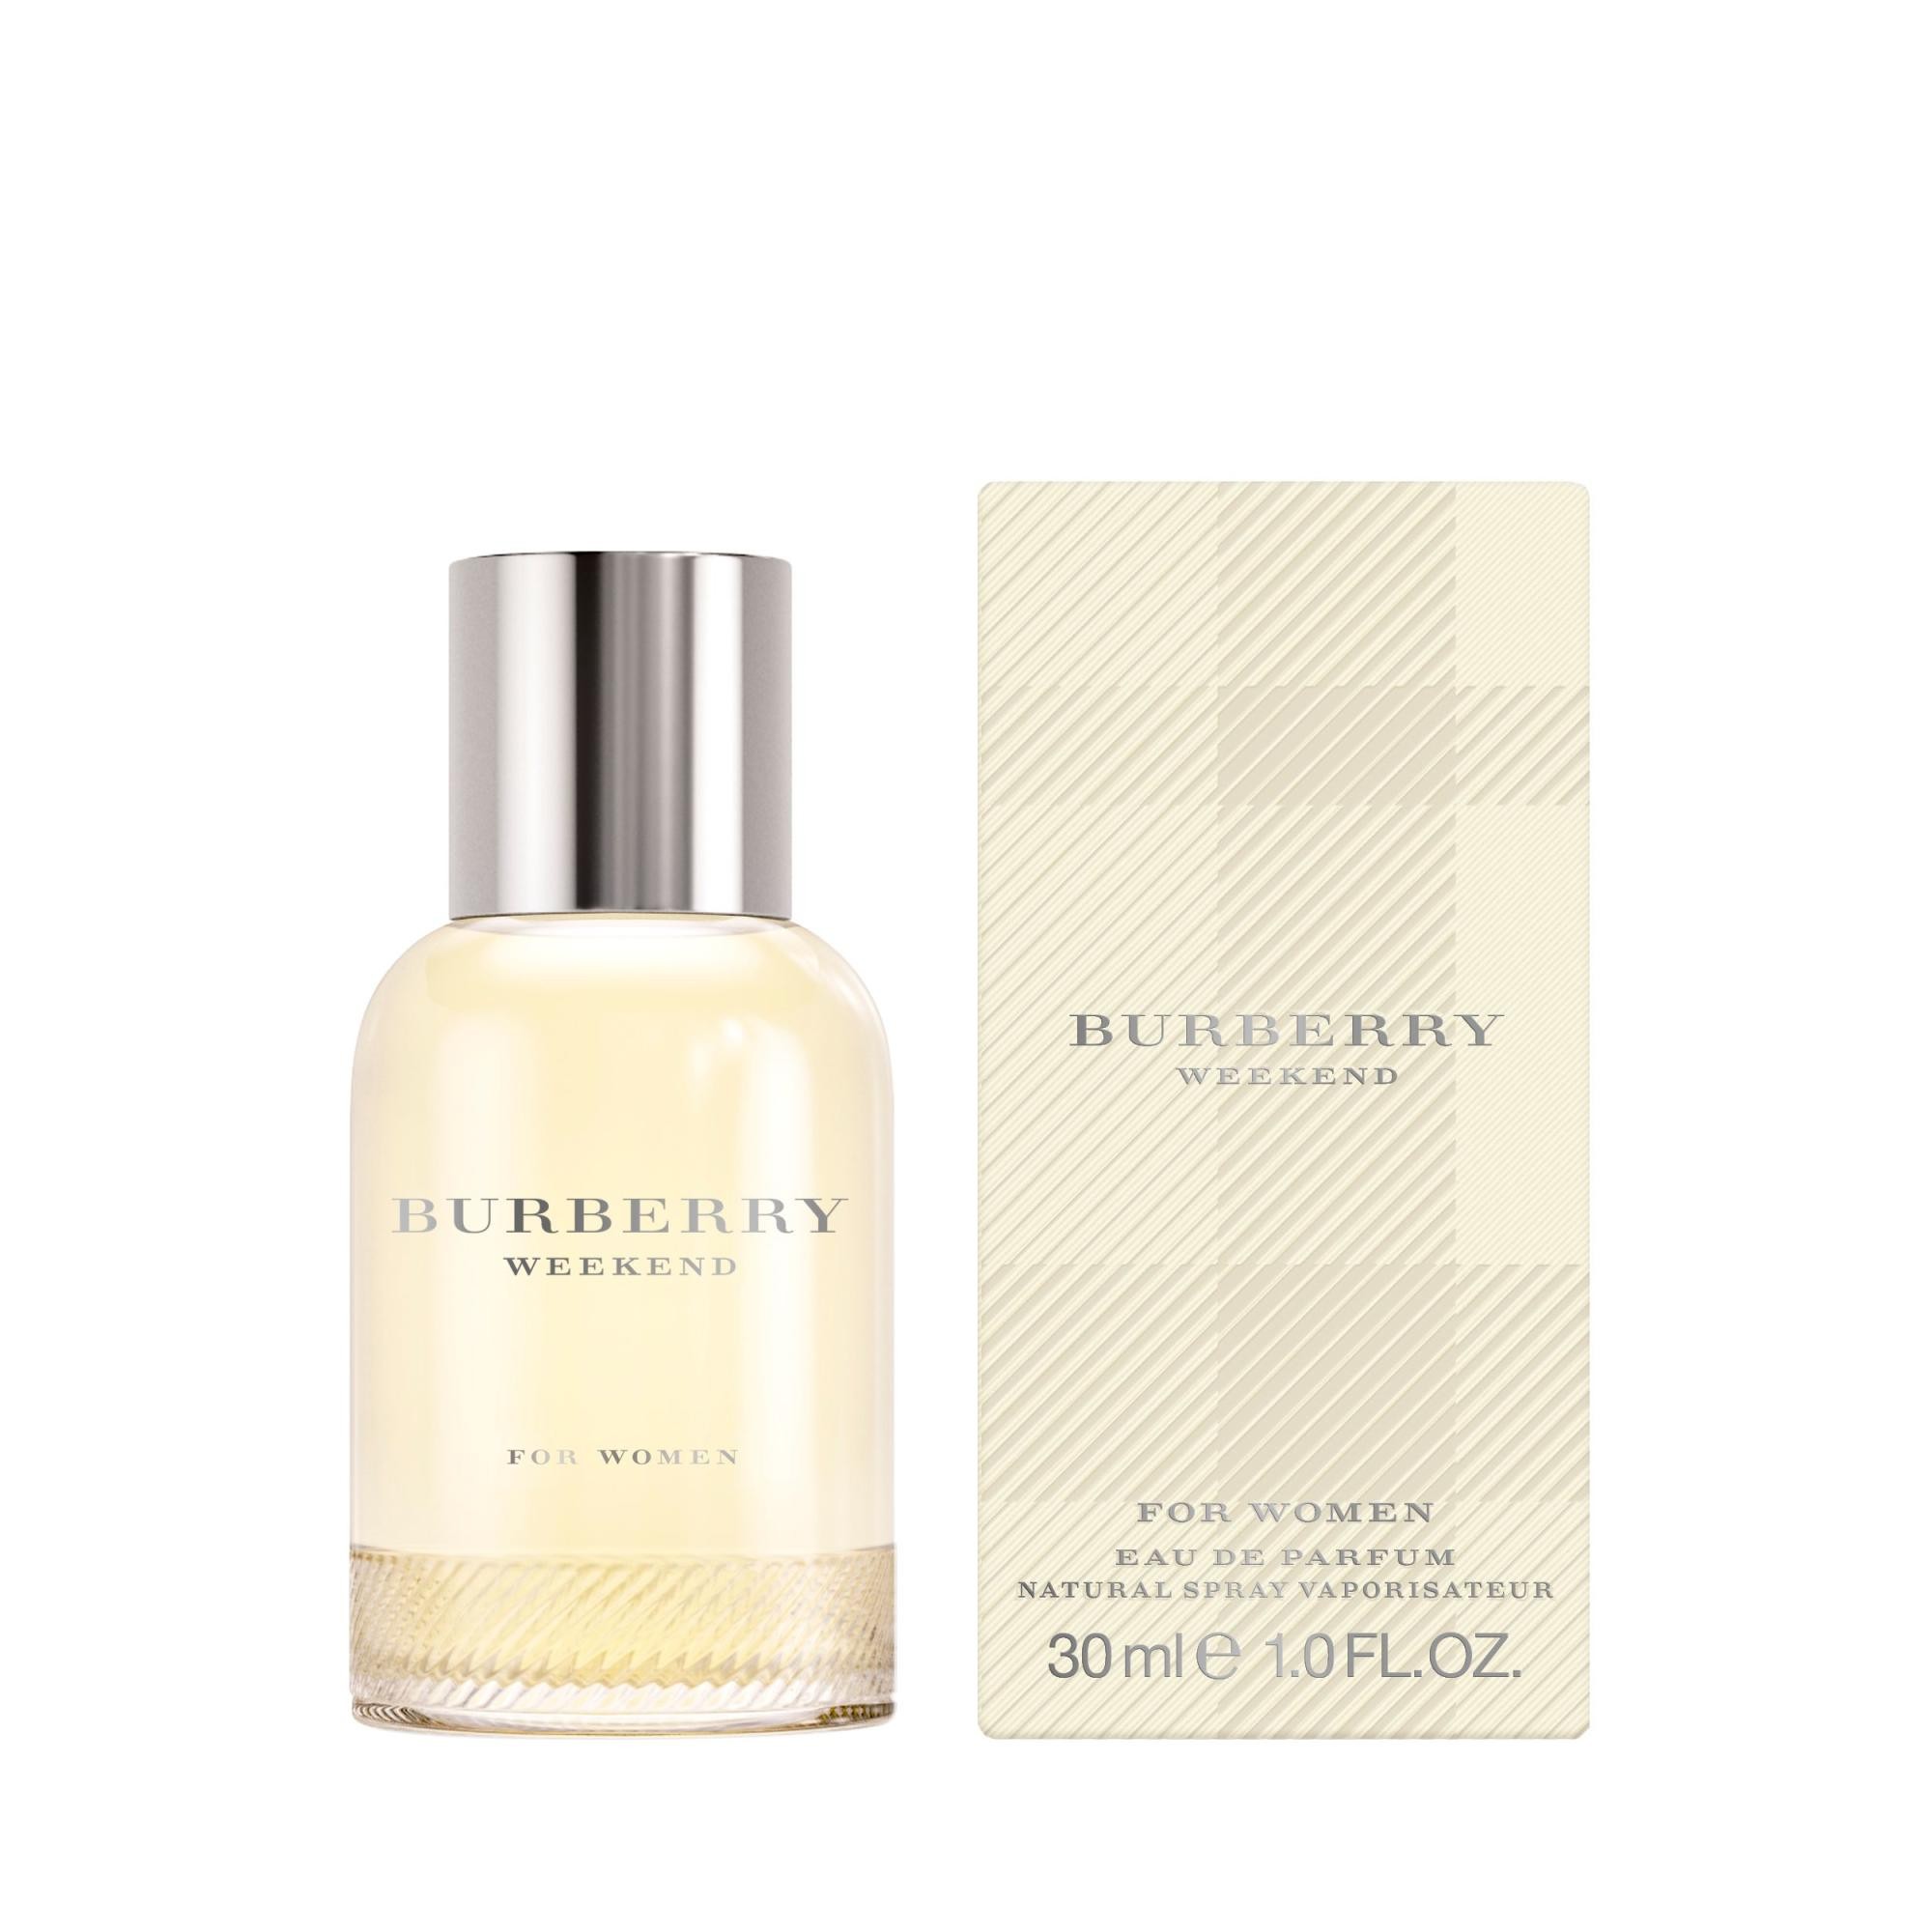 Burberry Weekend Eau de Parfum 30ml